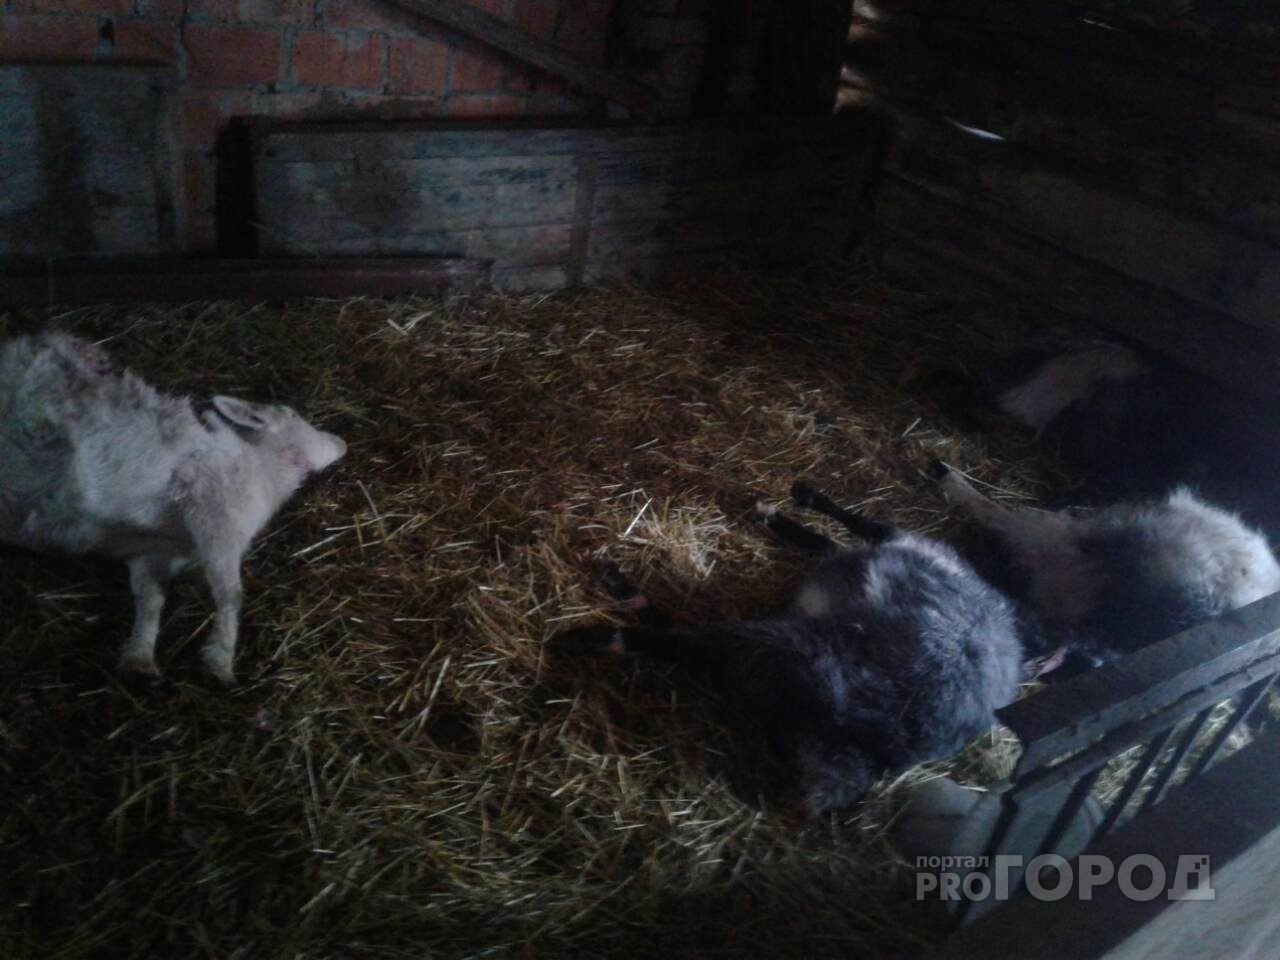 Жители чувашского села: "Неизвестное животное проникает в хлев и истребляет скот"